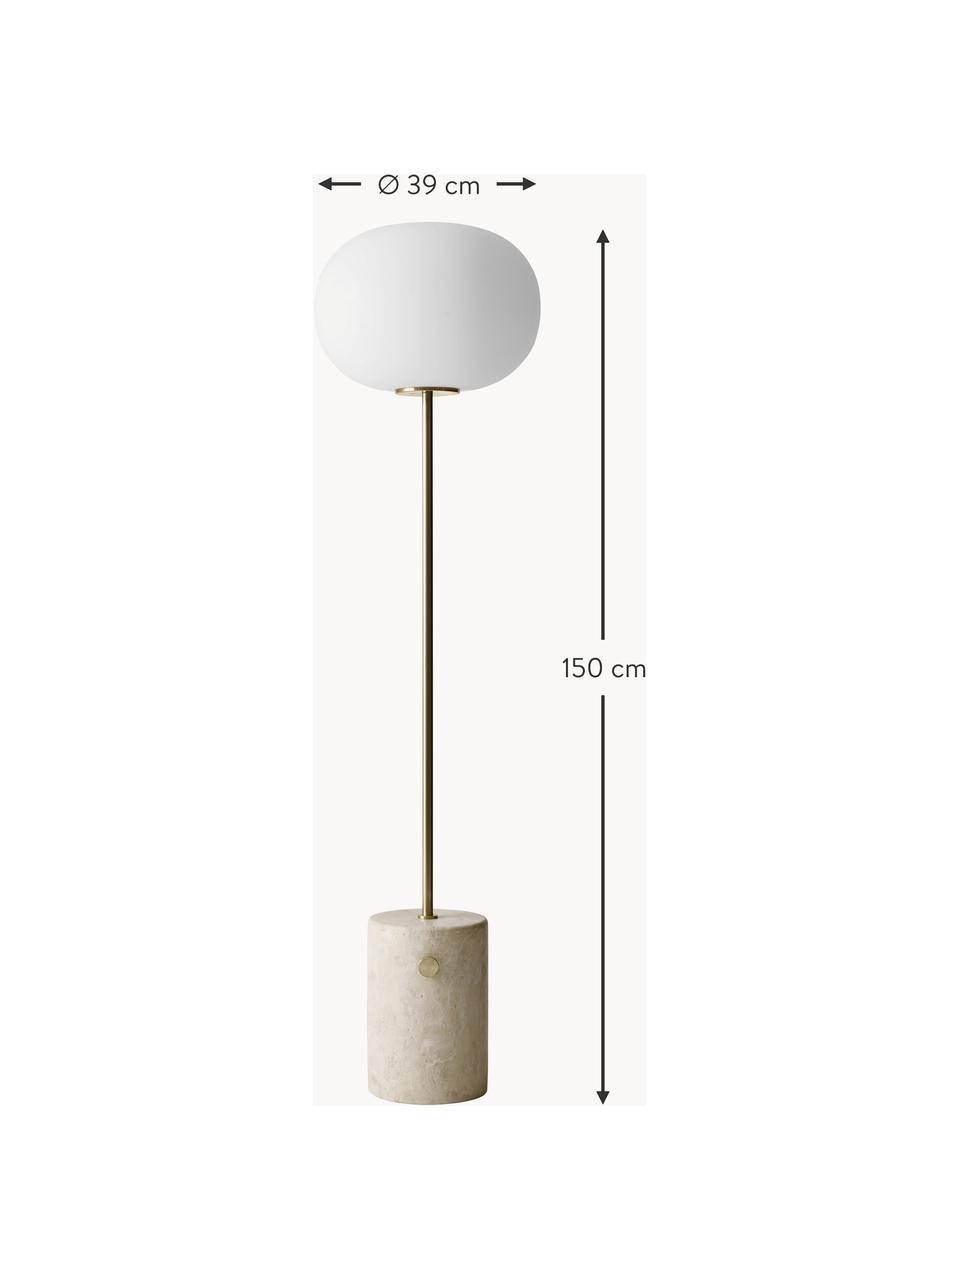 Lámpara de pie regulable de travertino JWDA, Pantalla: vidrio opalino, Estructura: metal recubierto, Cable: cubierto en tela, Travertino beige, blanco, Al 150 cm